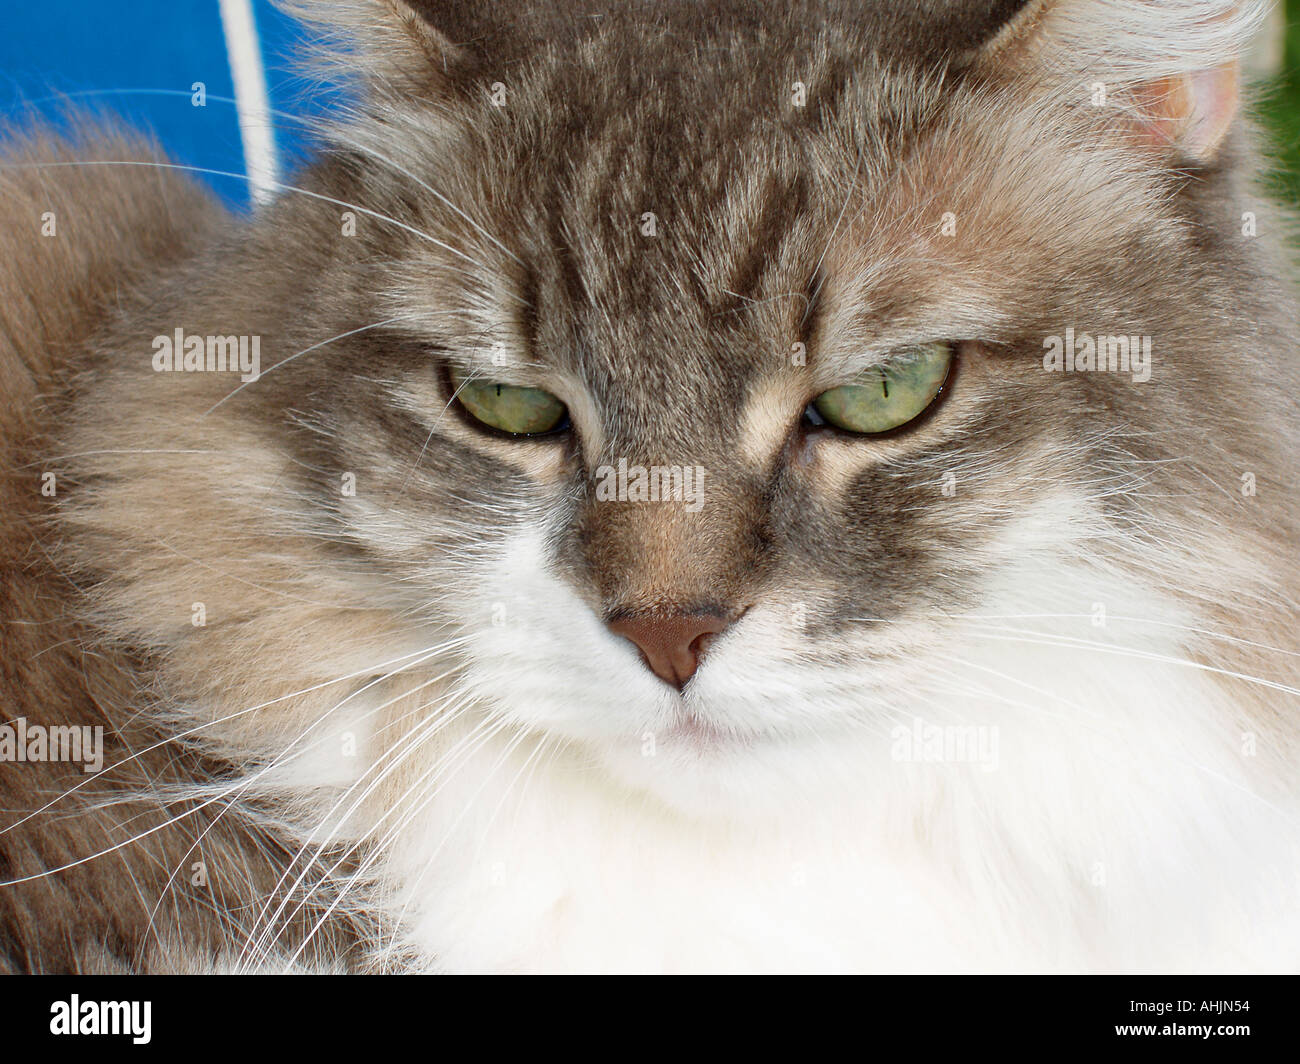 Content Cat Stock Photo